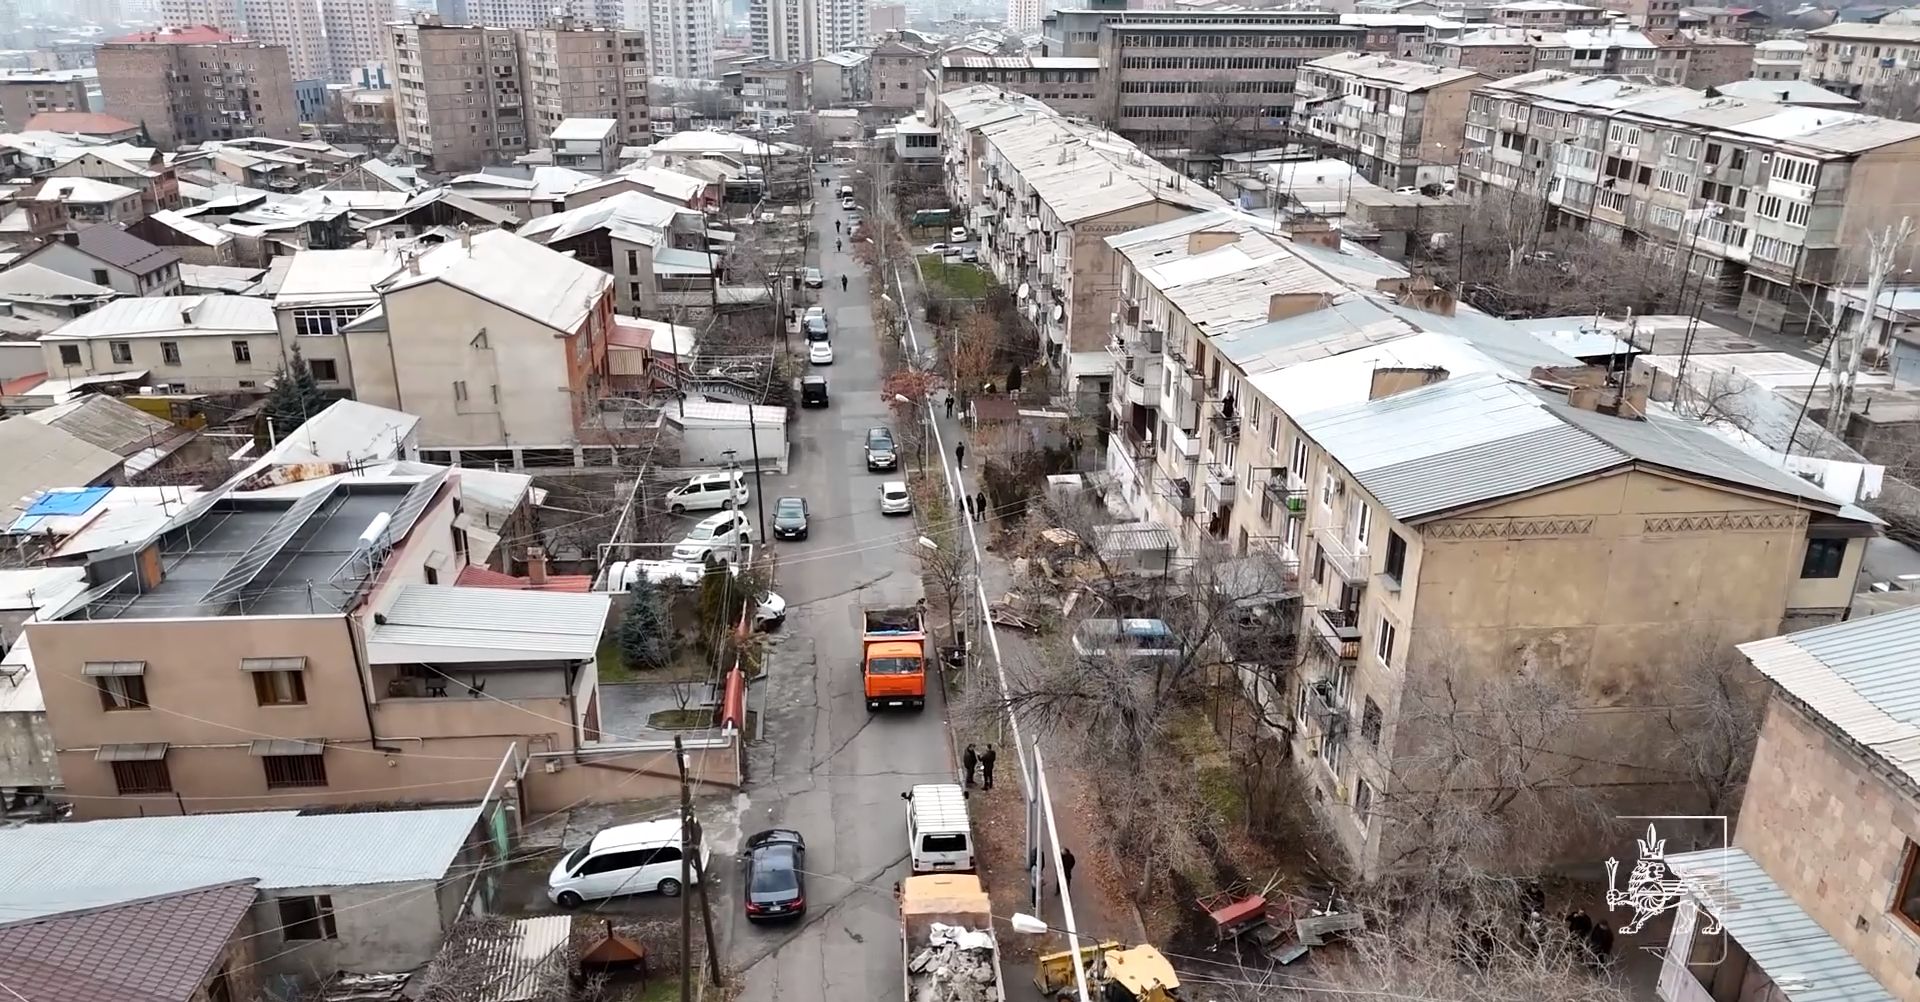 Երևանում ապամոնտաժվում են ապօրինի կառուցված և նորմերին չհամապատասխանող շինությունները (տեսանյութ)